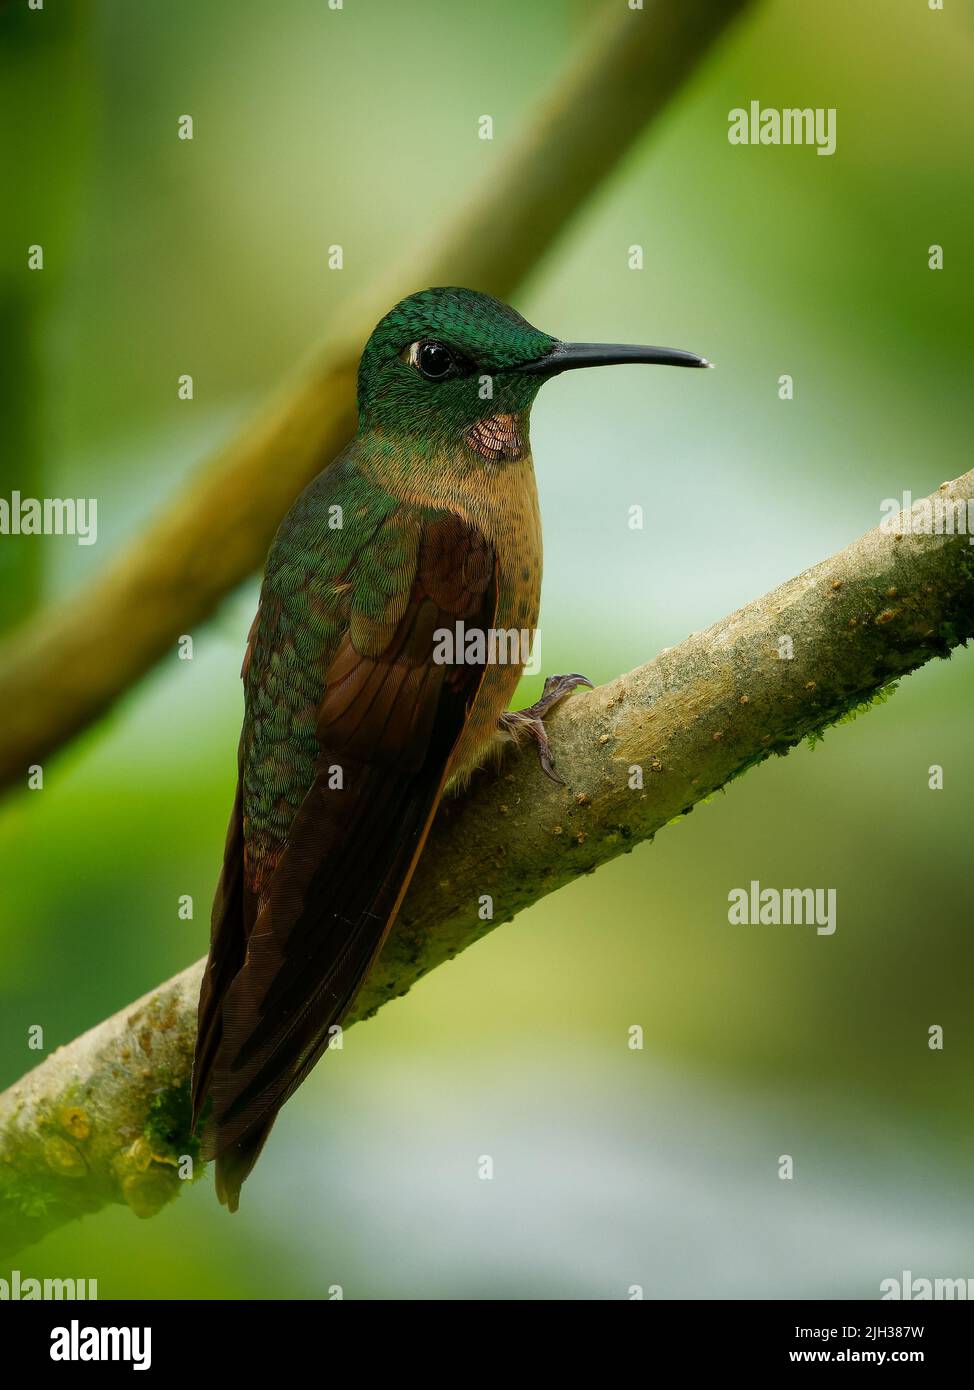 Brillante de peón - Heliodoxa rubinoides colibrí, ave nativa de América del Sur, en Bolivia, Colombia, Ecuador y Perú, también llamada lila-th Foto de stock